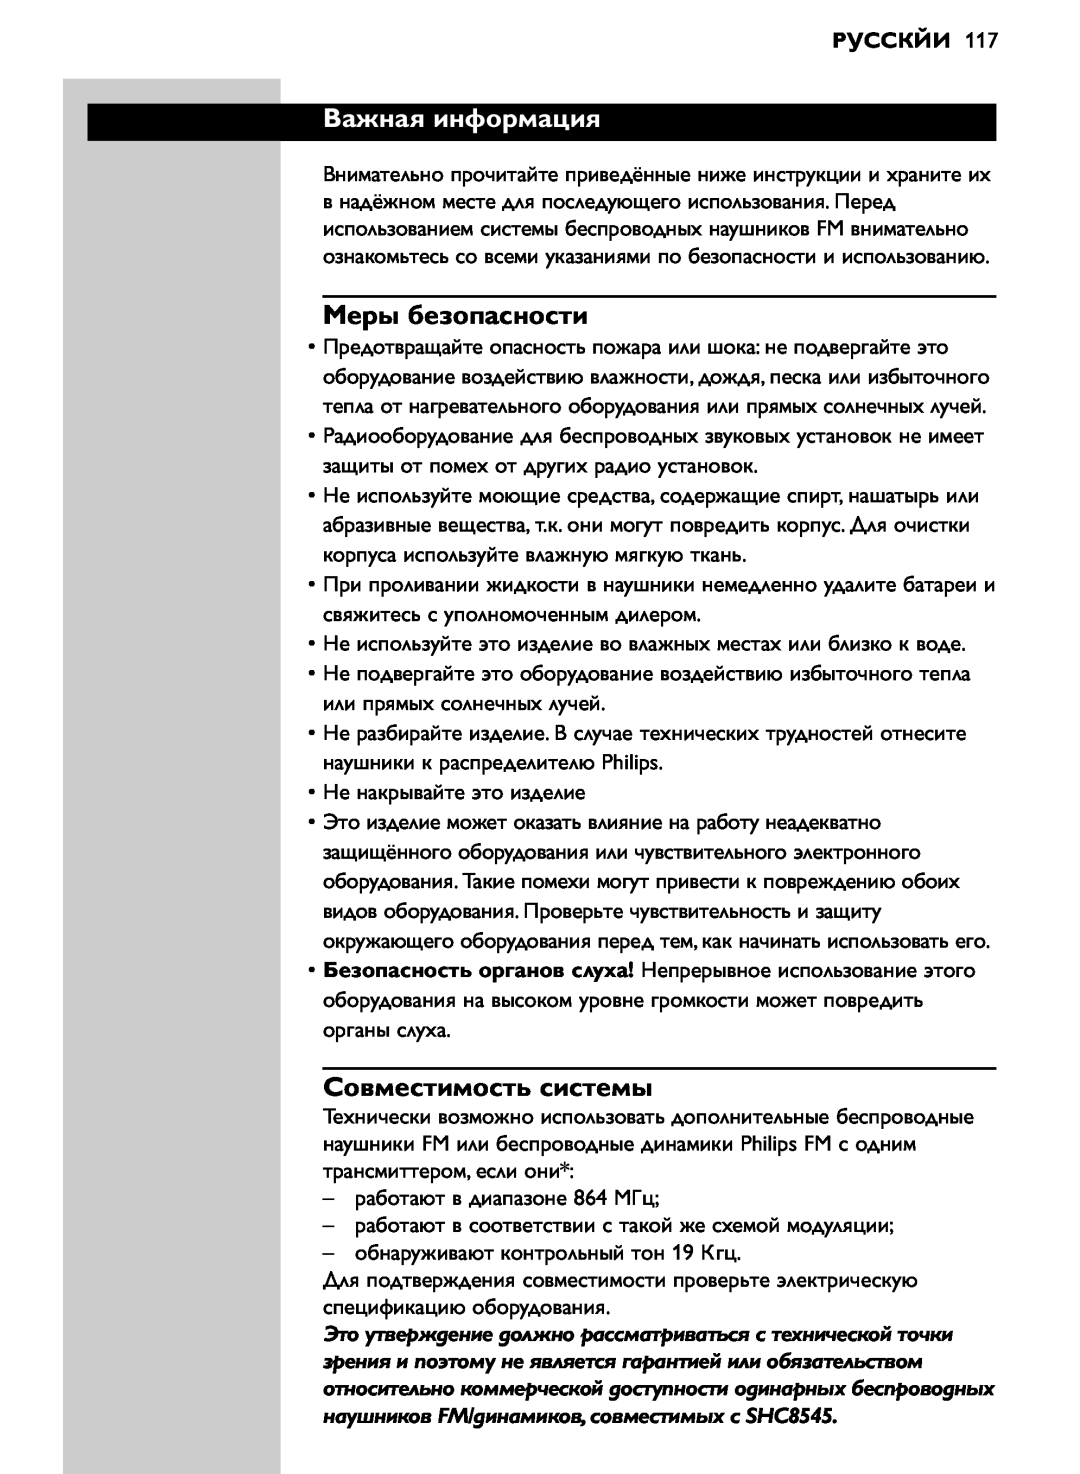 Philips SHC8545/00 manual Важная информация, Меры безопасности, Совместимость системы, Русскйи 